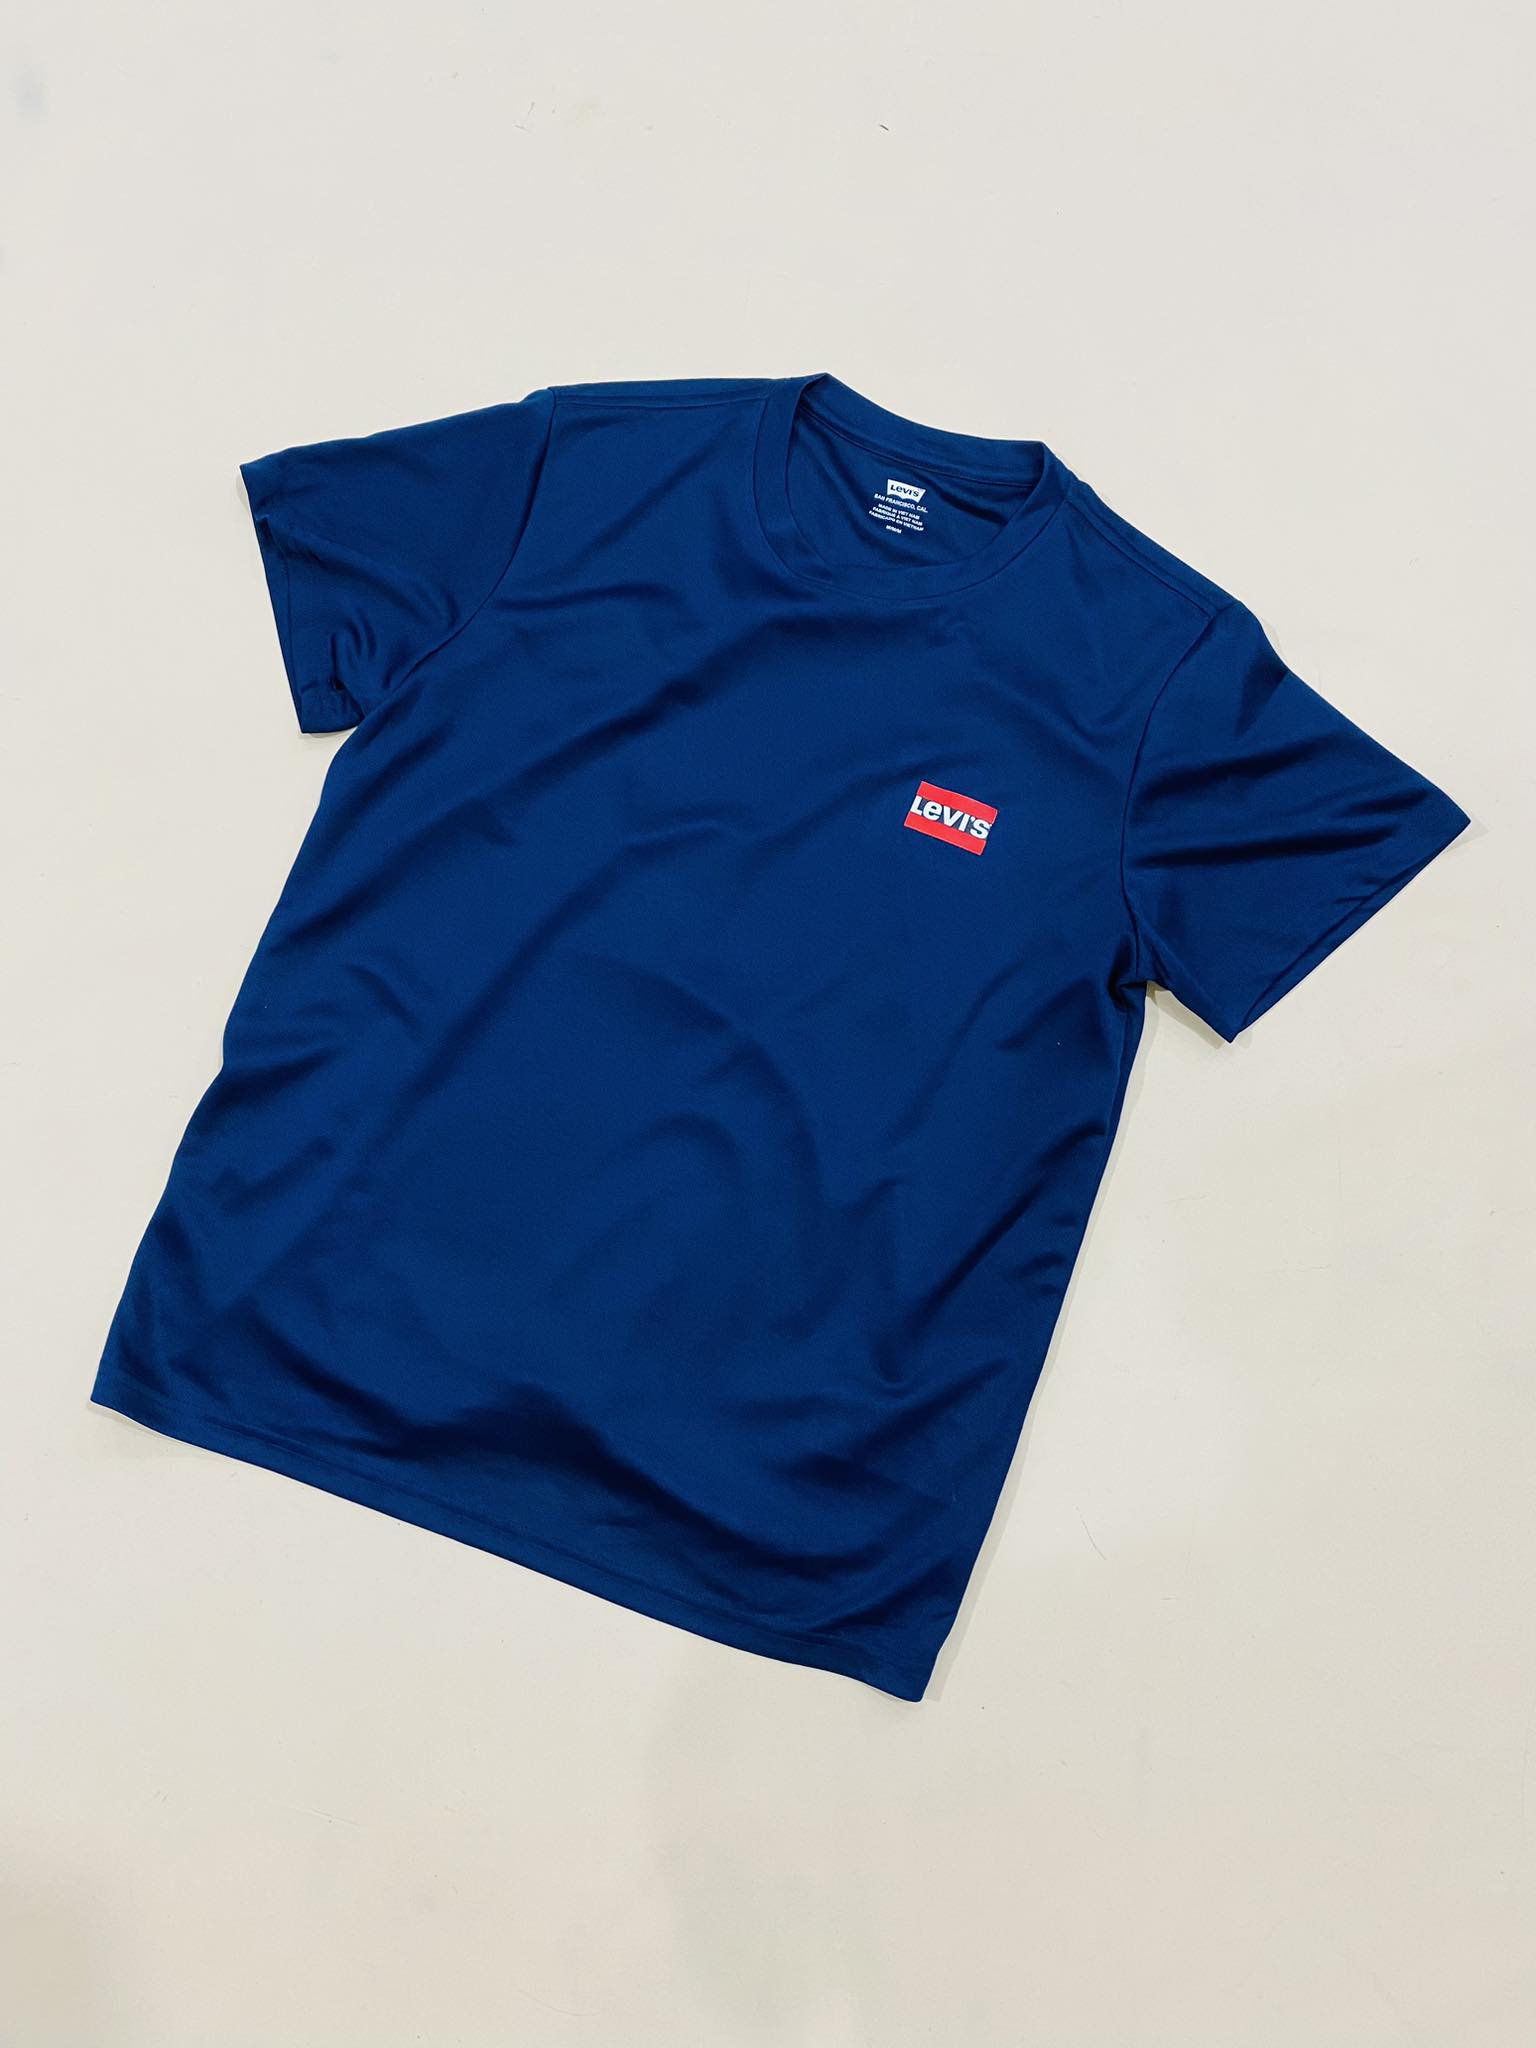 ÁO TSHIRTS CHÍNH HÃNG - Levi's® CREWNECK GRAPHIC Basic T-shirt - 79681-0000-Navy